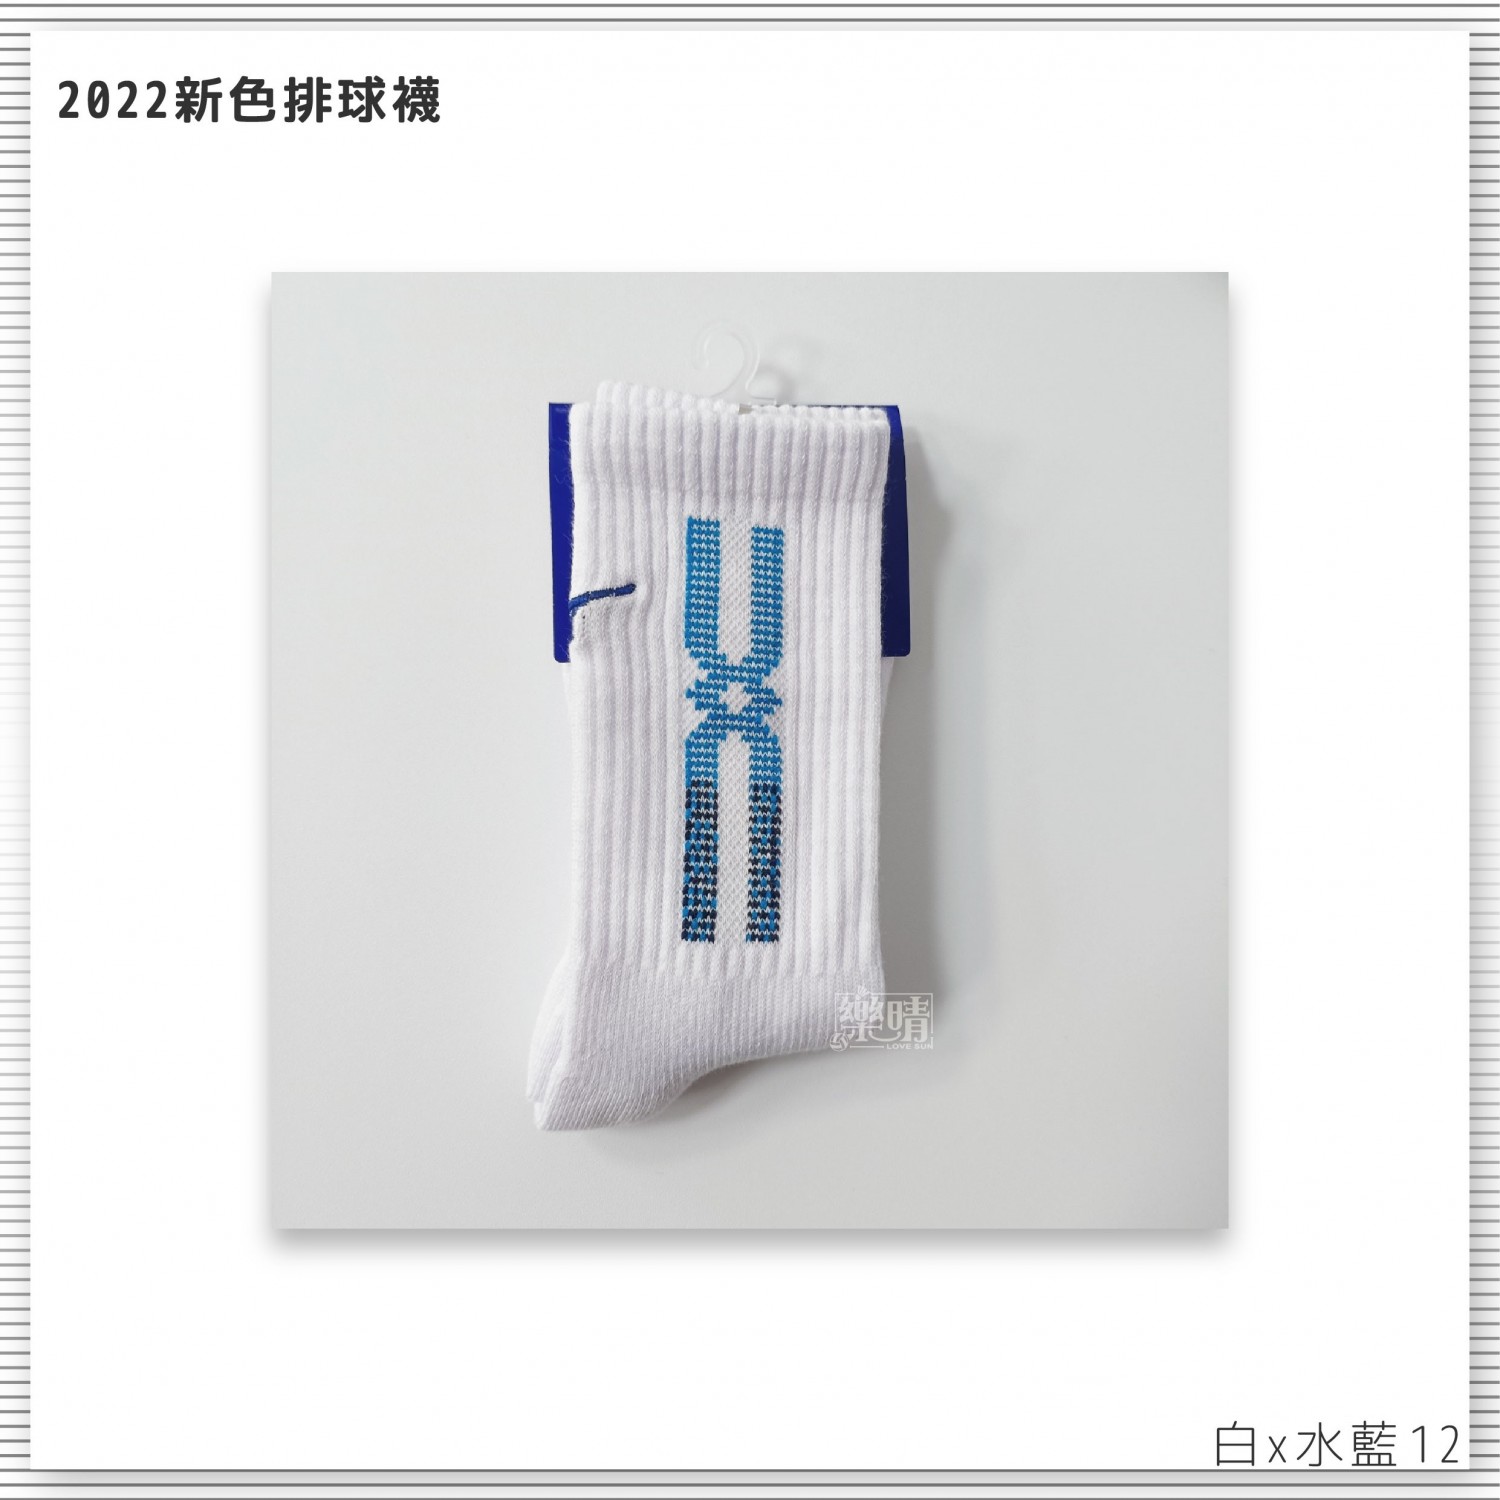 美津濃 排球襪 12 白x水藍